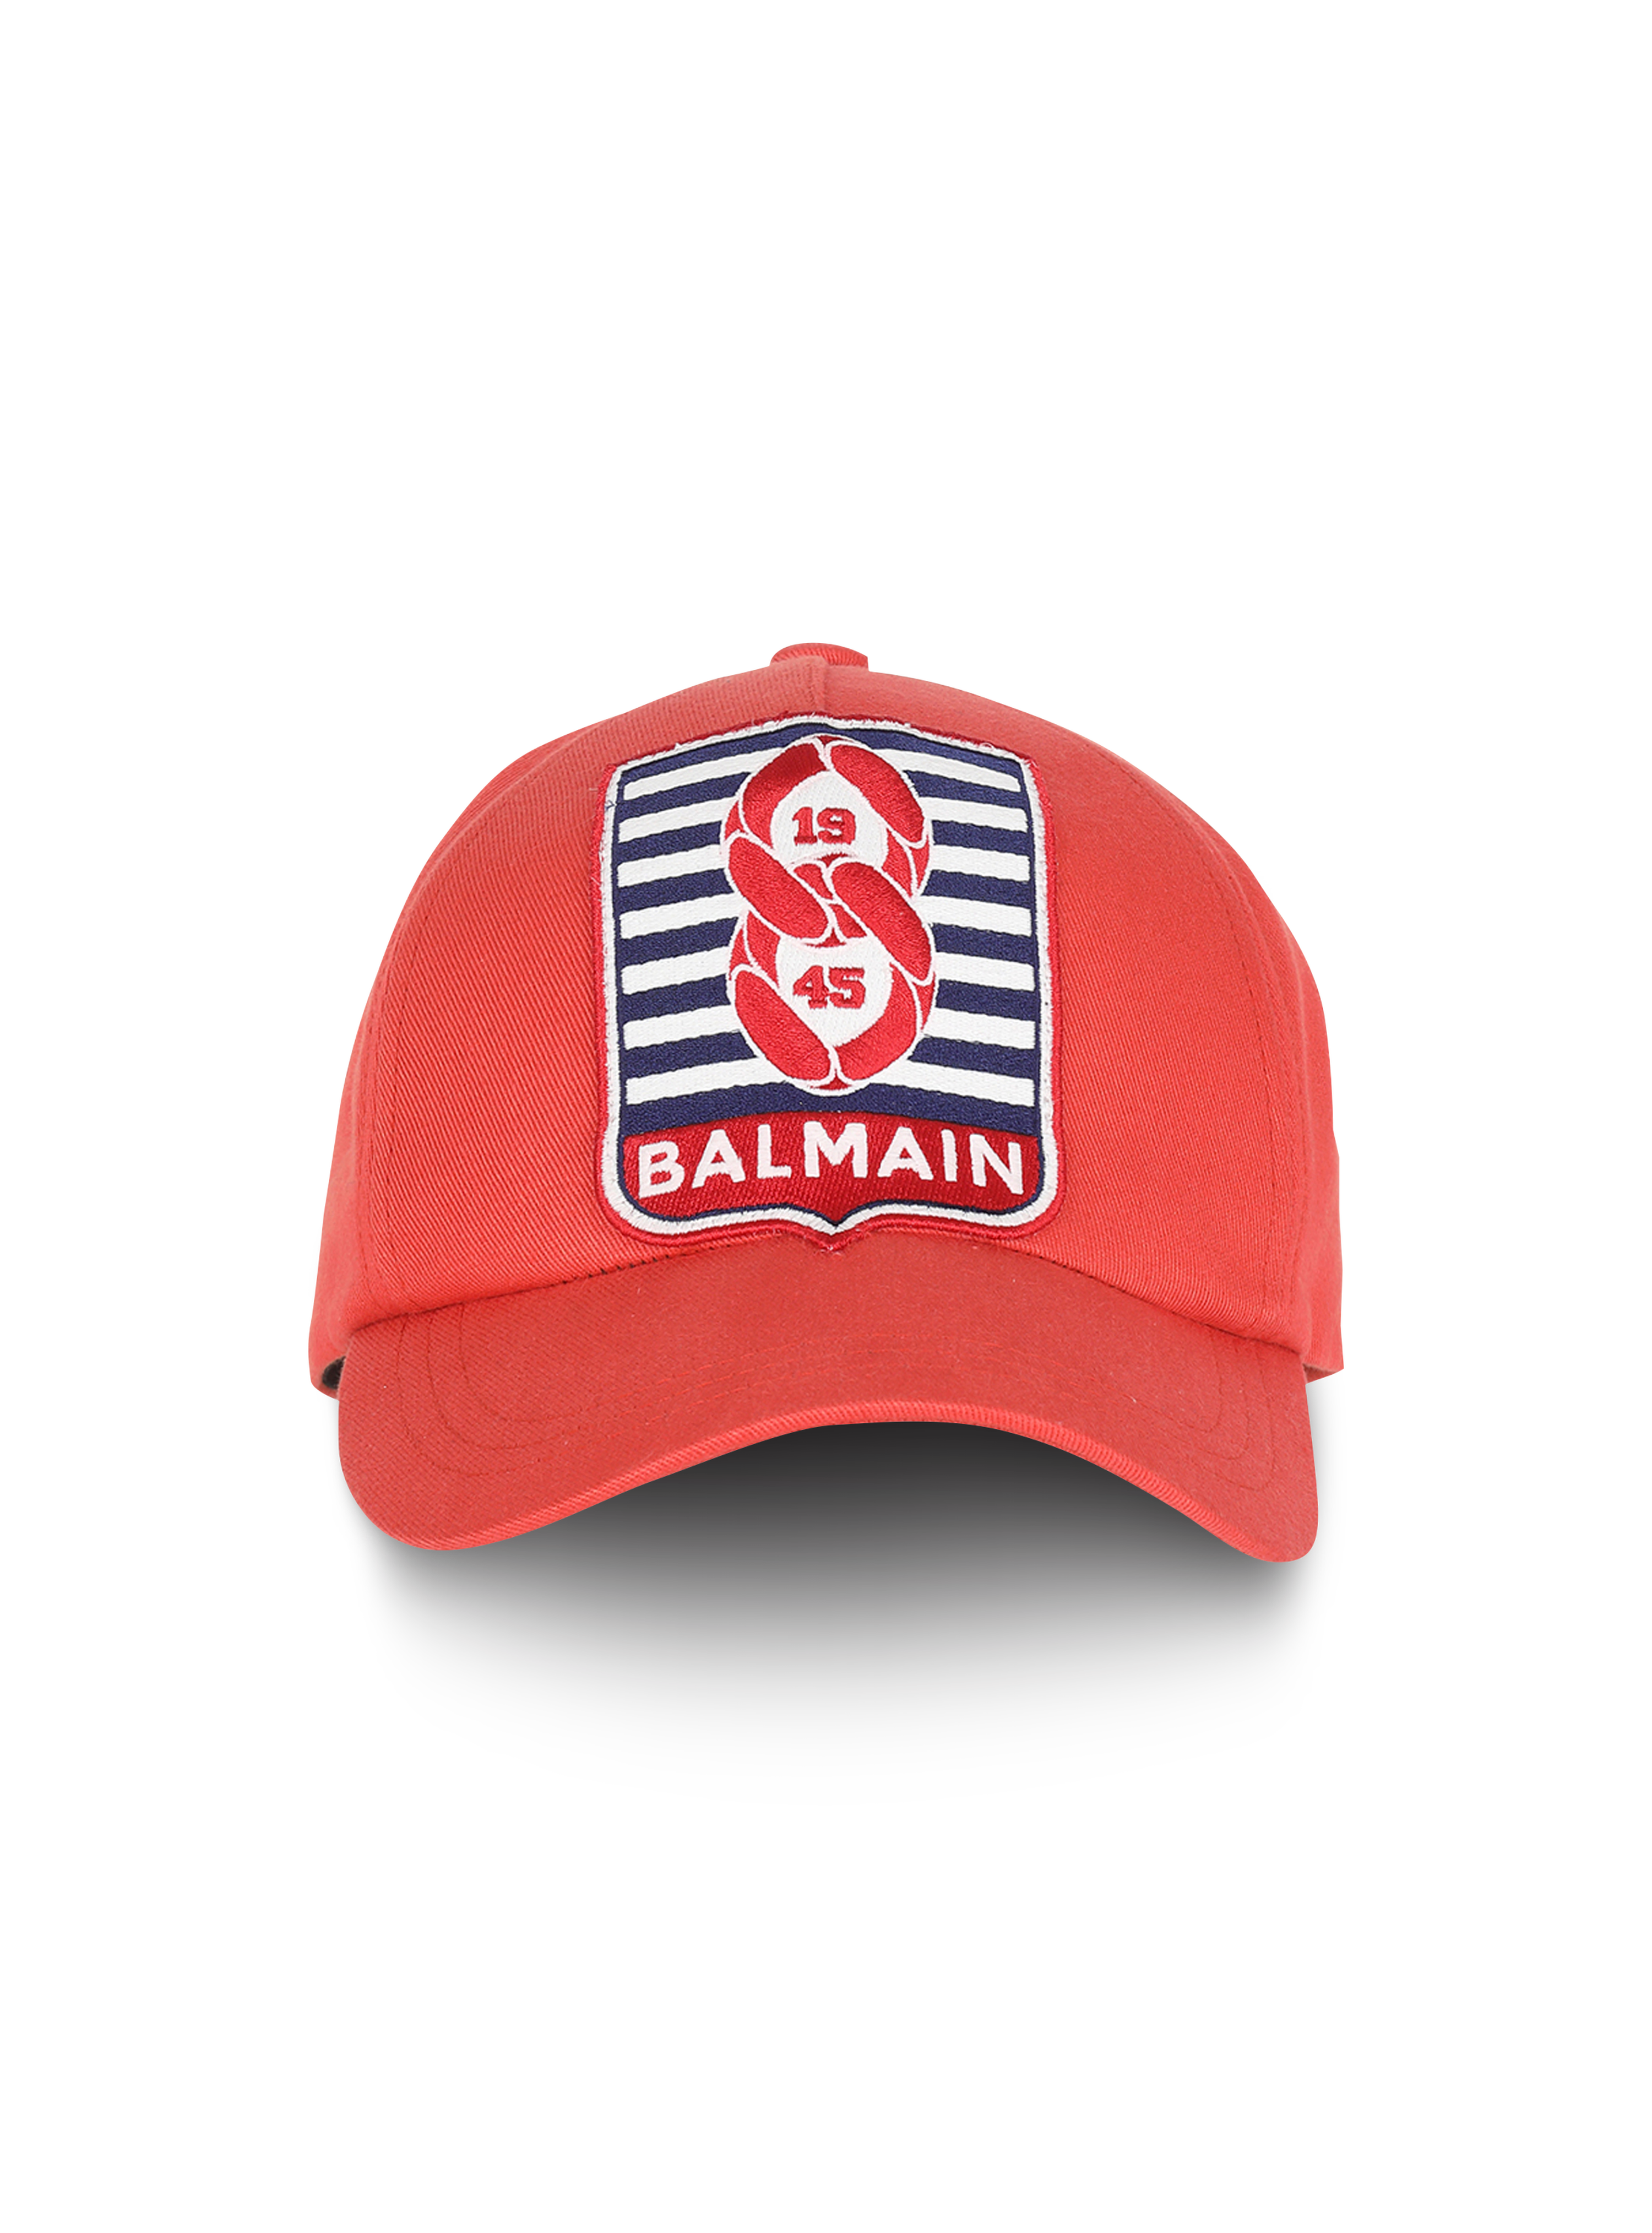 盛夏胶囊系列 - Balmain 交织字母徽章装饰棉质棒球帽, red